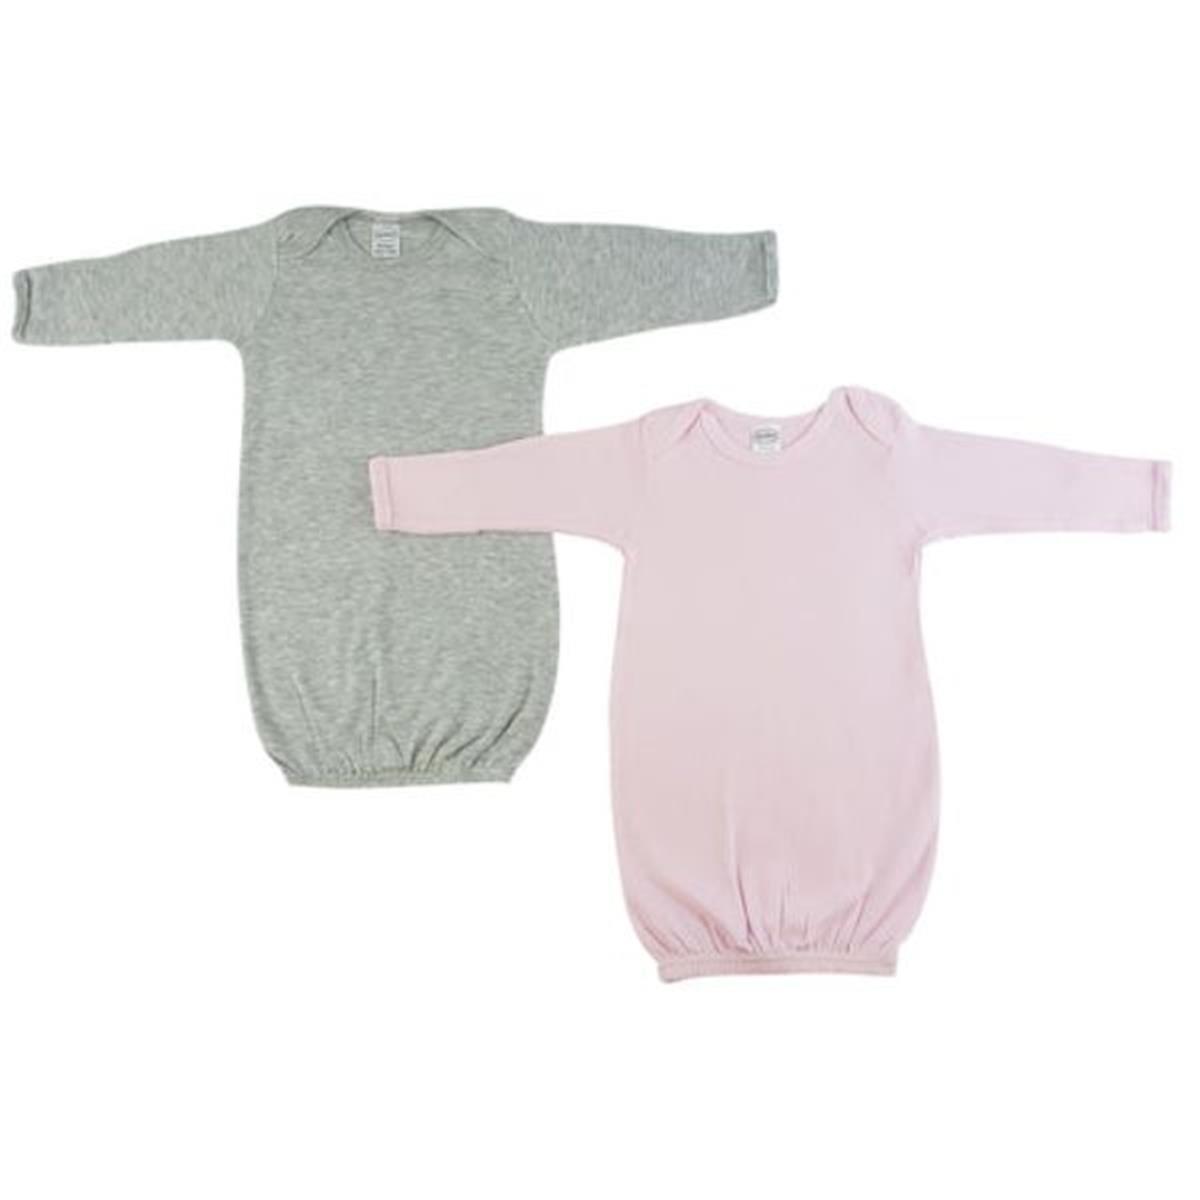 Bambini LS-0679 Baby Girl Shower Gift Set&#44; White & Pink - Newborn